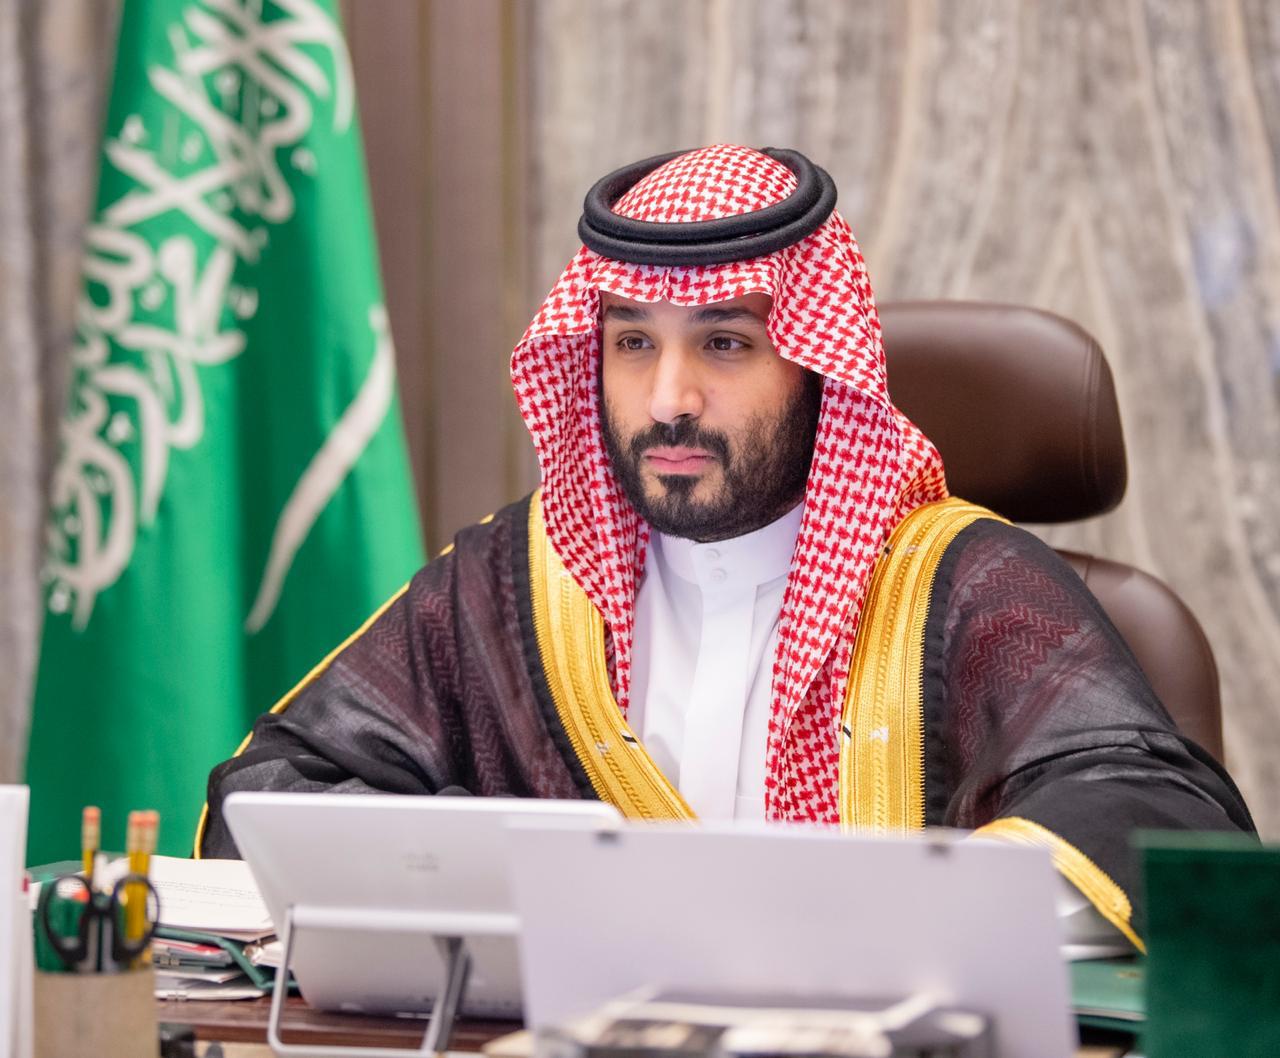 ولي العهد: صندوق الاستثمارات سيضخ مئات المليارات في الاقتصاد السعودي لخلق المزيد من فرص العمل